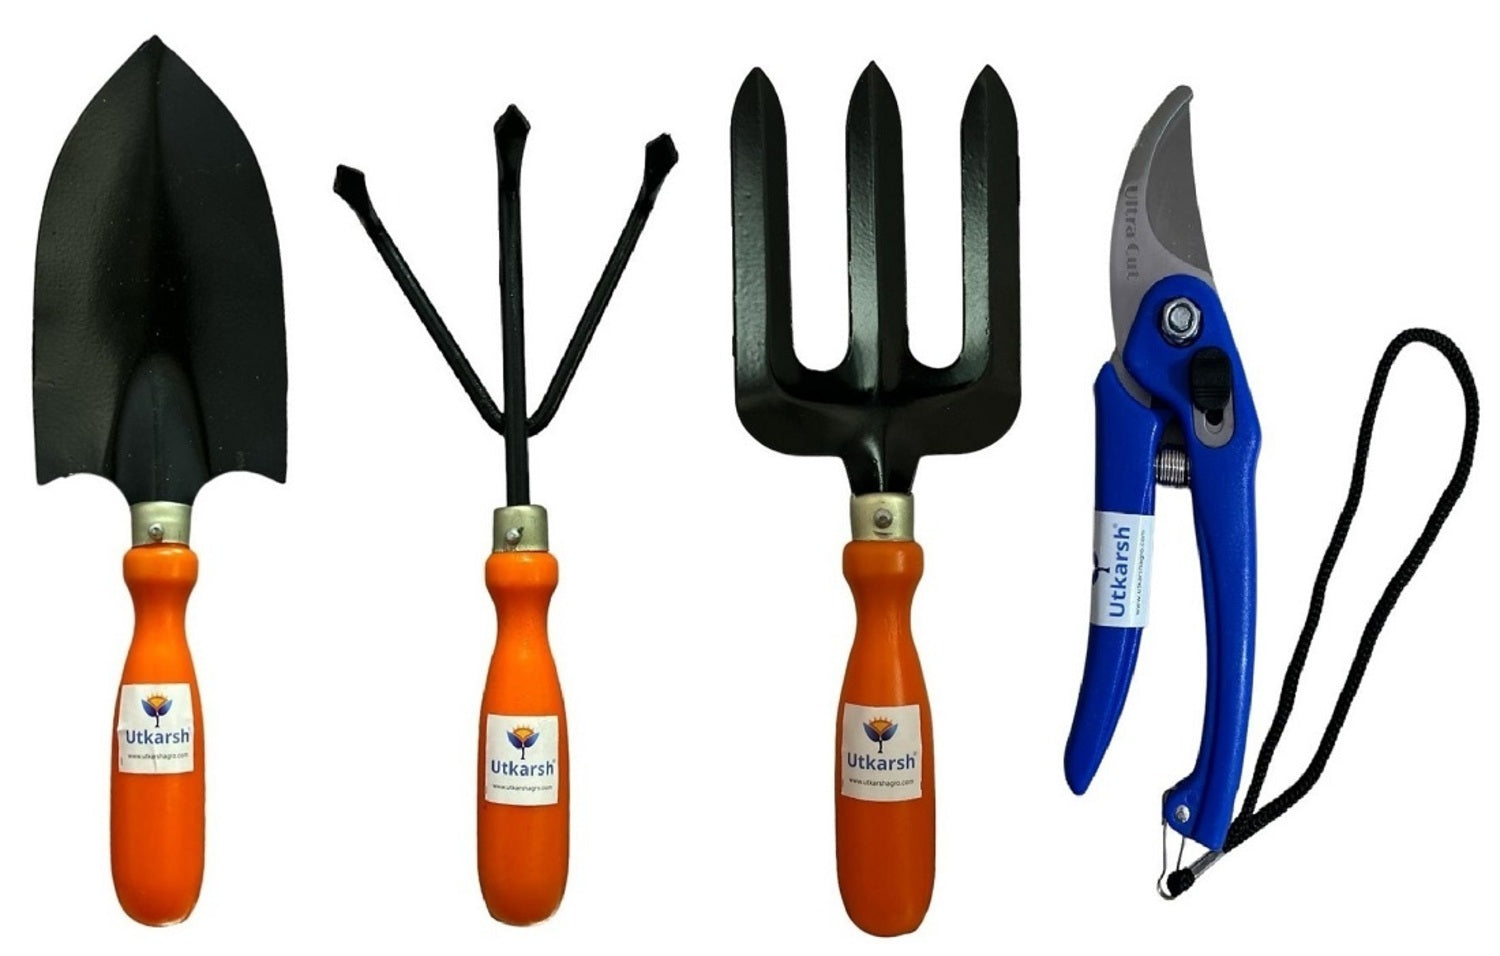 Utkarsh Home Gardening Tools Kit- Big Trowel, Fork, Cultivator, Garden Pruner Cutters | Garden Hand Tools for Planting, Digging, Transplanting & Stem Plant Cutters for Home Garden | Set of 4 Tools